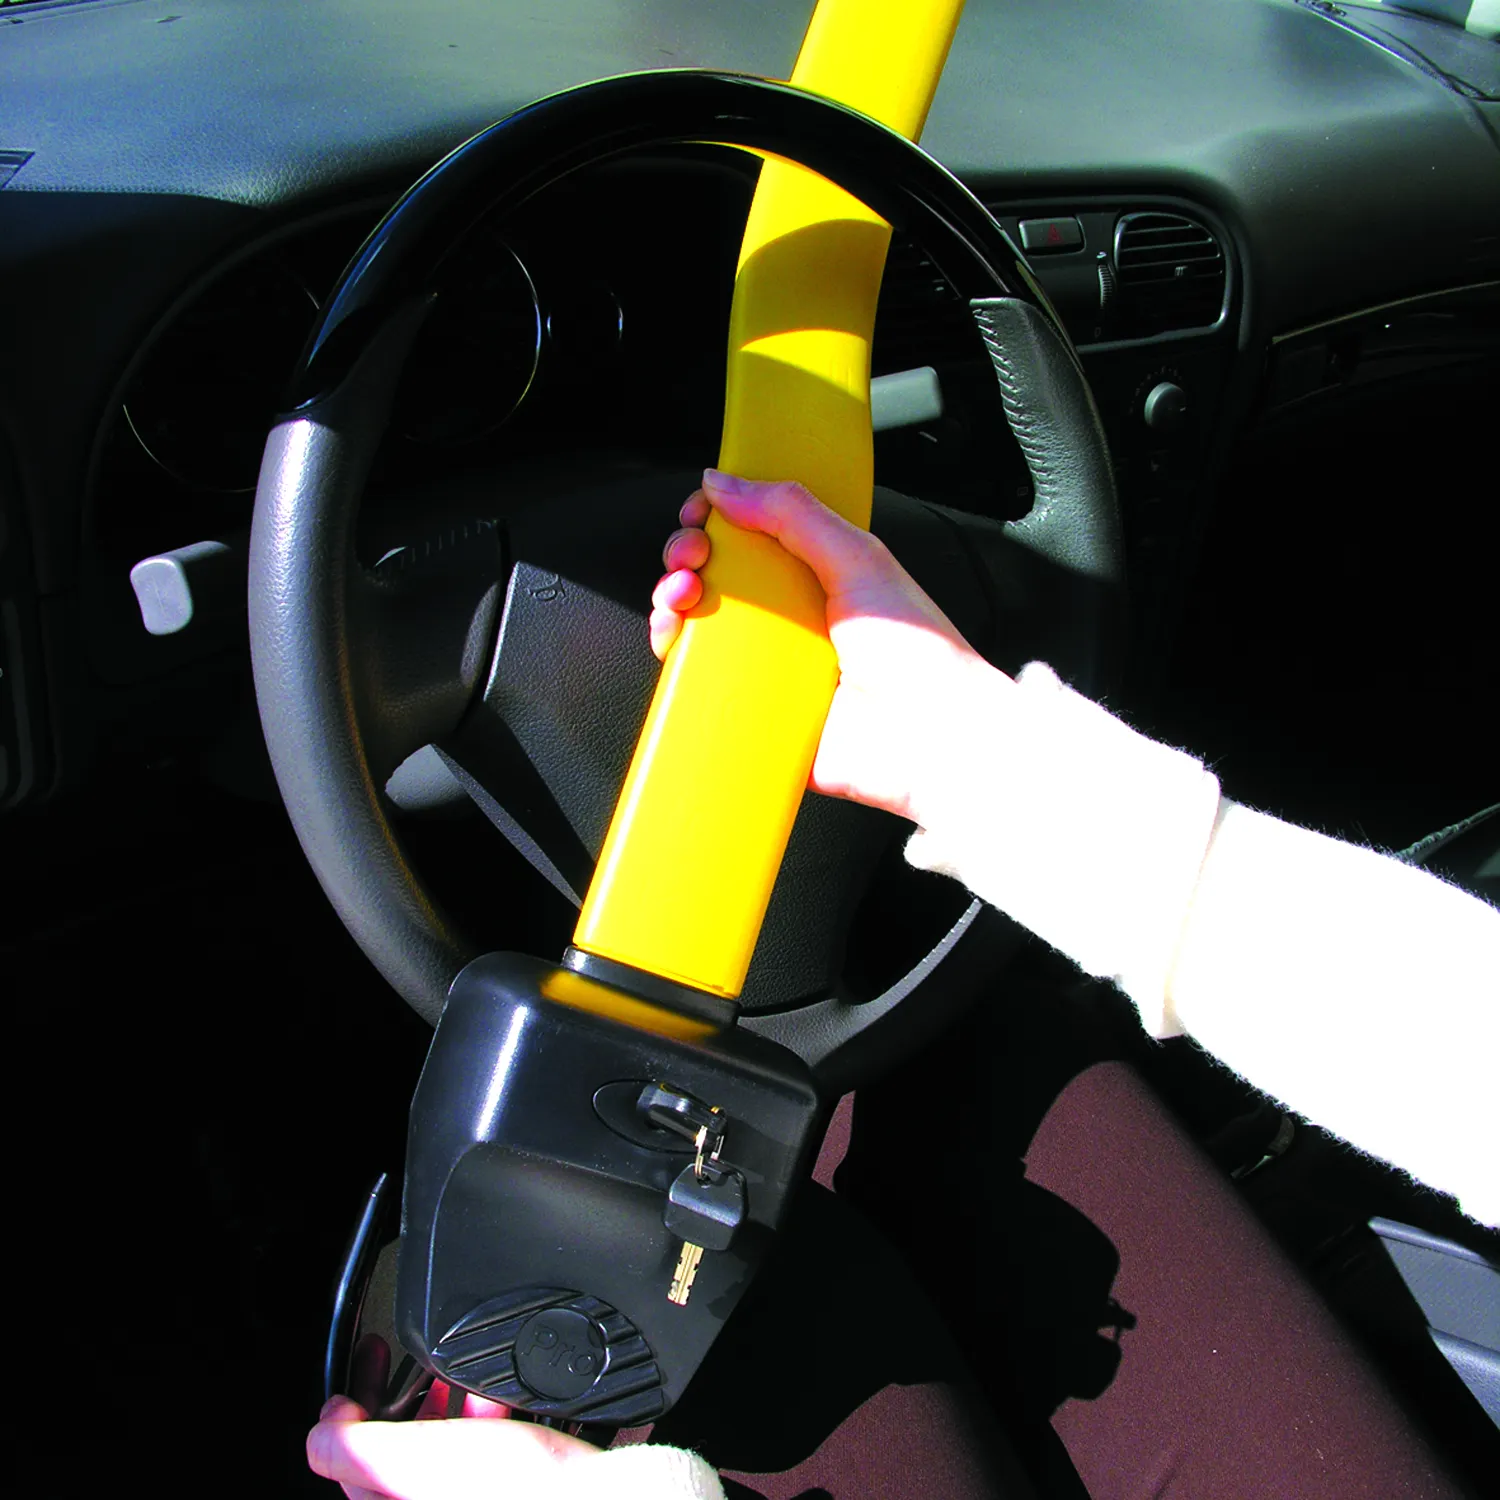 Car wheel Lock with Keys accessories for car Hook Locks Steering Wheel Lock Universal car